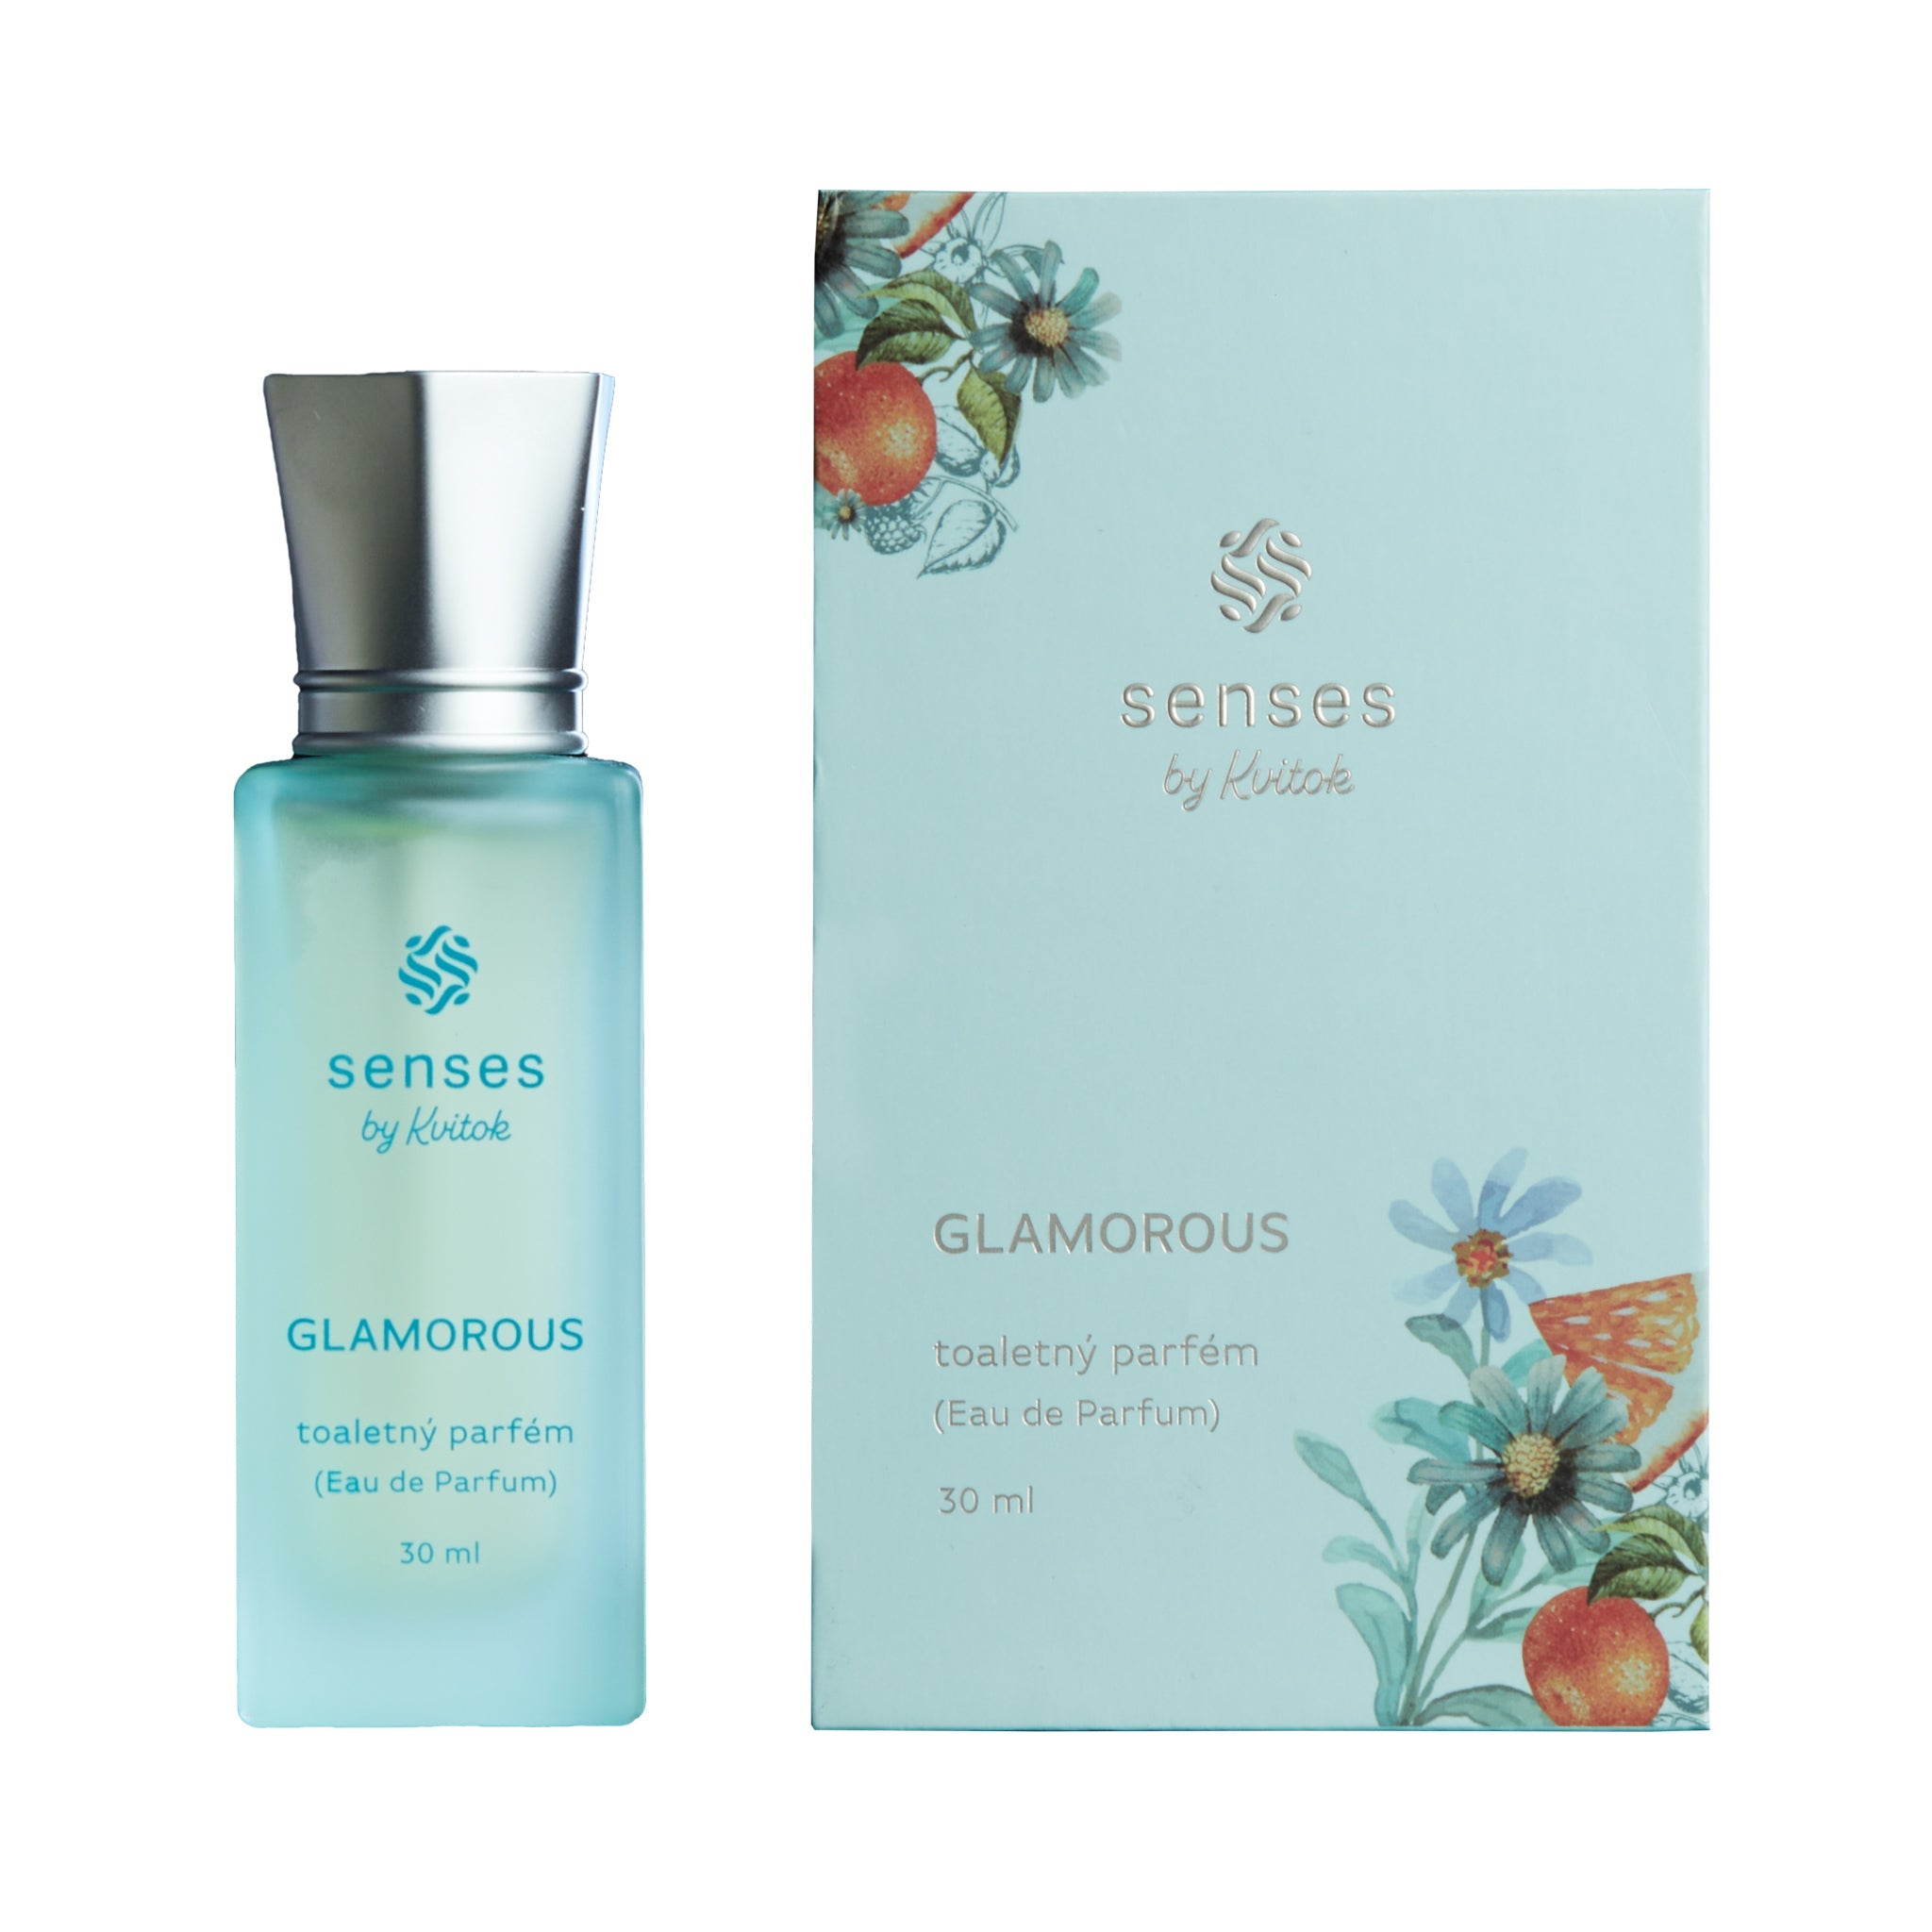 Kvitok Toaletní parfém Glamorous (30 ml) - II. jakost - s vůní pomeranče